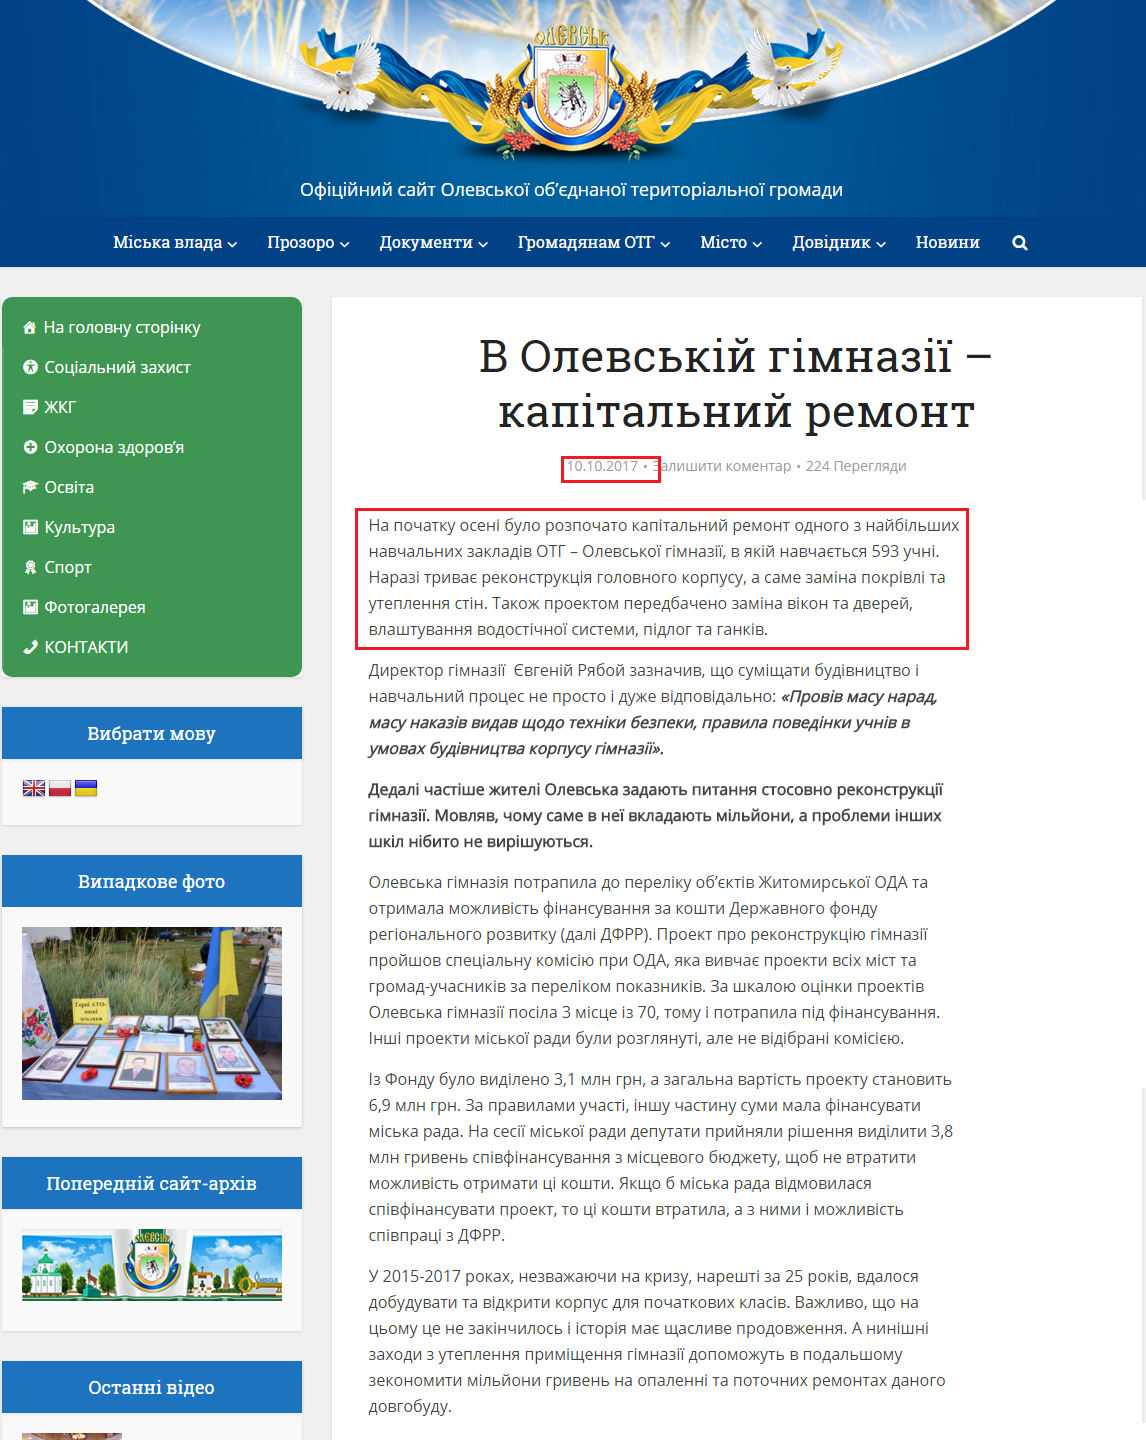 http://olevsk-gromada.gov.ua/2017/10/10/v-olevskiy-gimnaziyi-kapitalniy-remont/